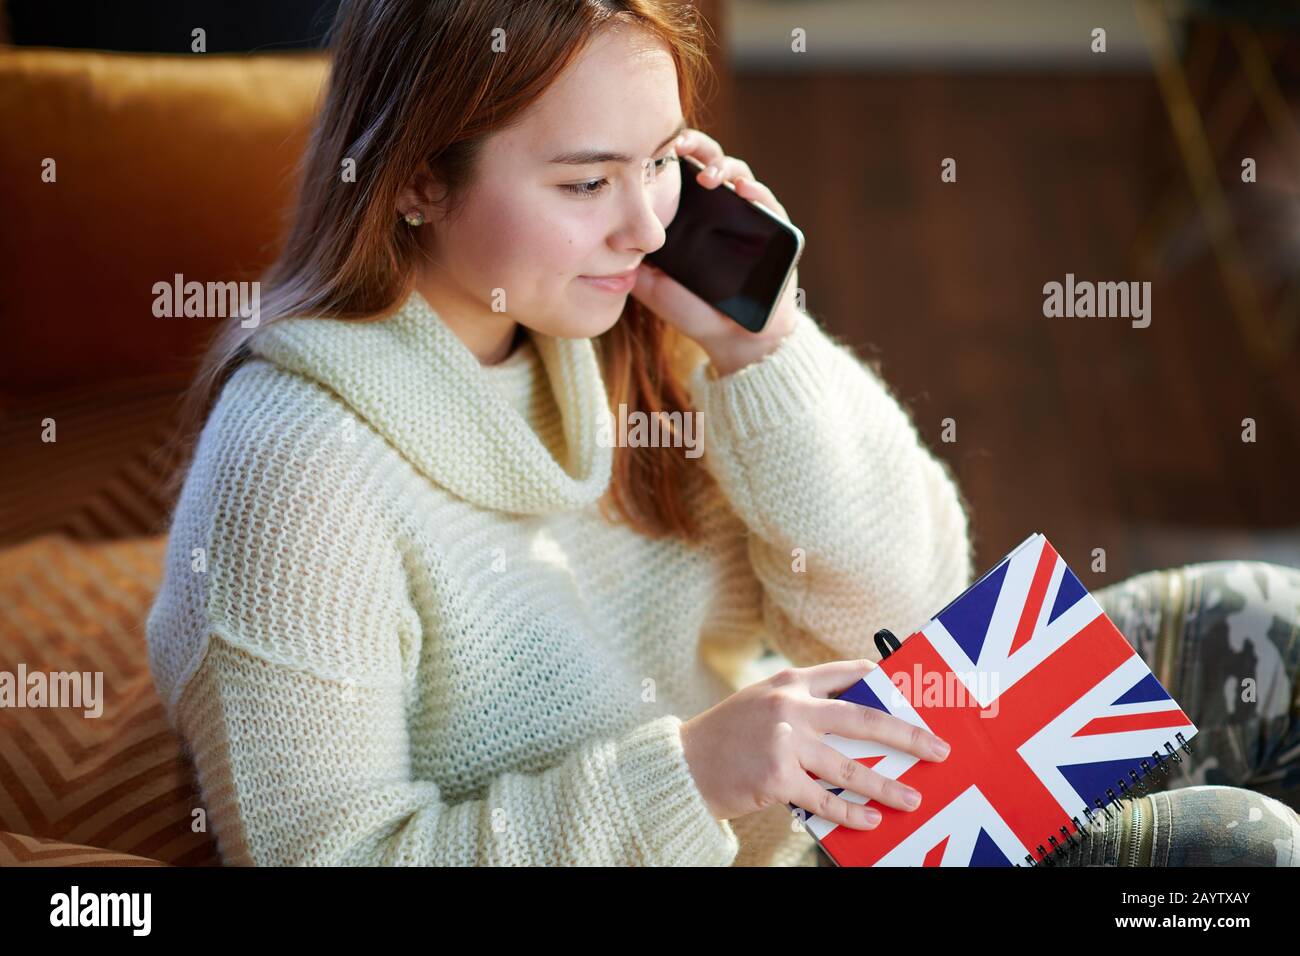 Fröhliches Mädchen der modernen Jugend mit roten Haaren in weißem Pullover mit Notizbuchfarben britischer Flagge, das auf einem Handy im modernen Haus in sonniger Lage spricht Stockfoto